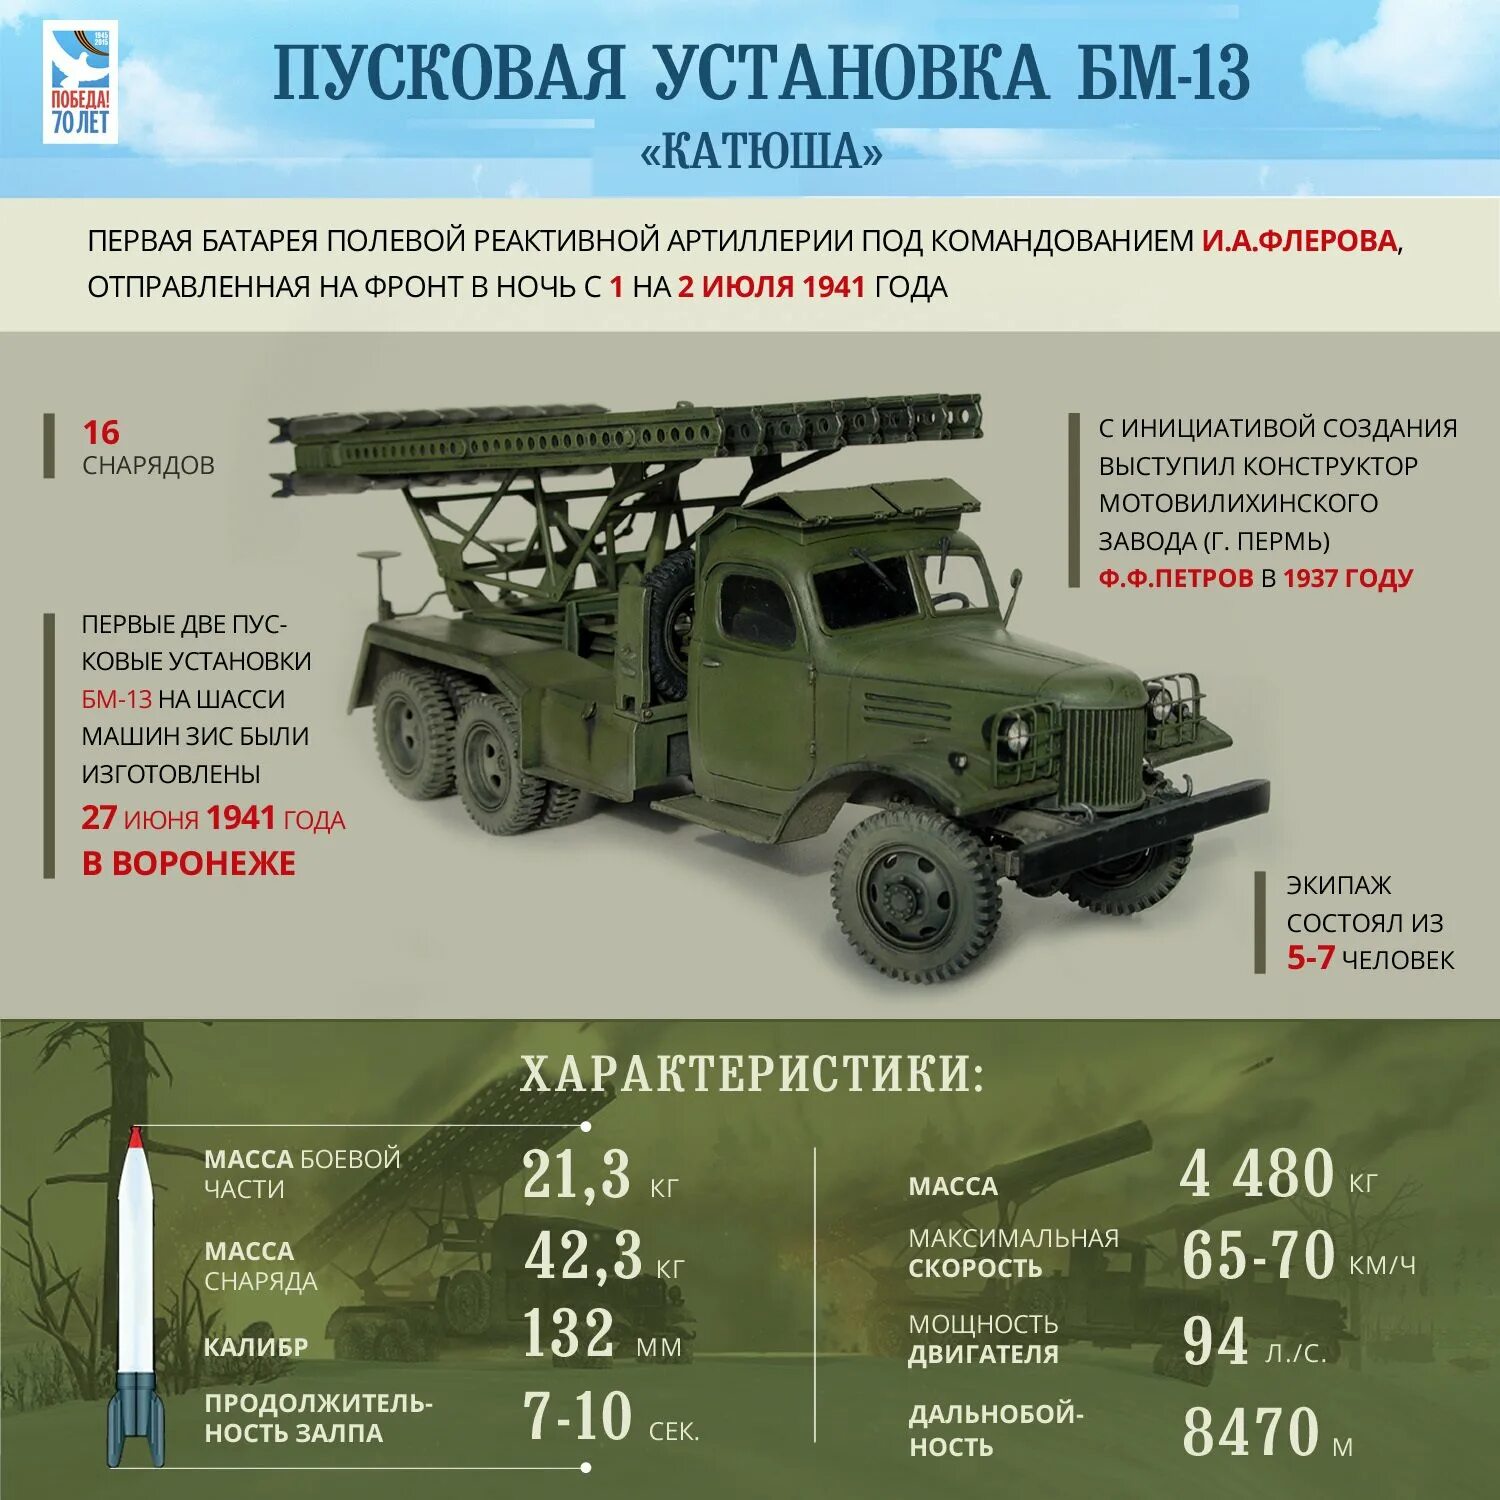 Название военных машин. БМ-13 Катюша ТТХ. Машина БМ-13 "Катюша". Советское оружие Победы БМ 13 Катюша. Катюша реактивный миномет БМ-13.